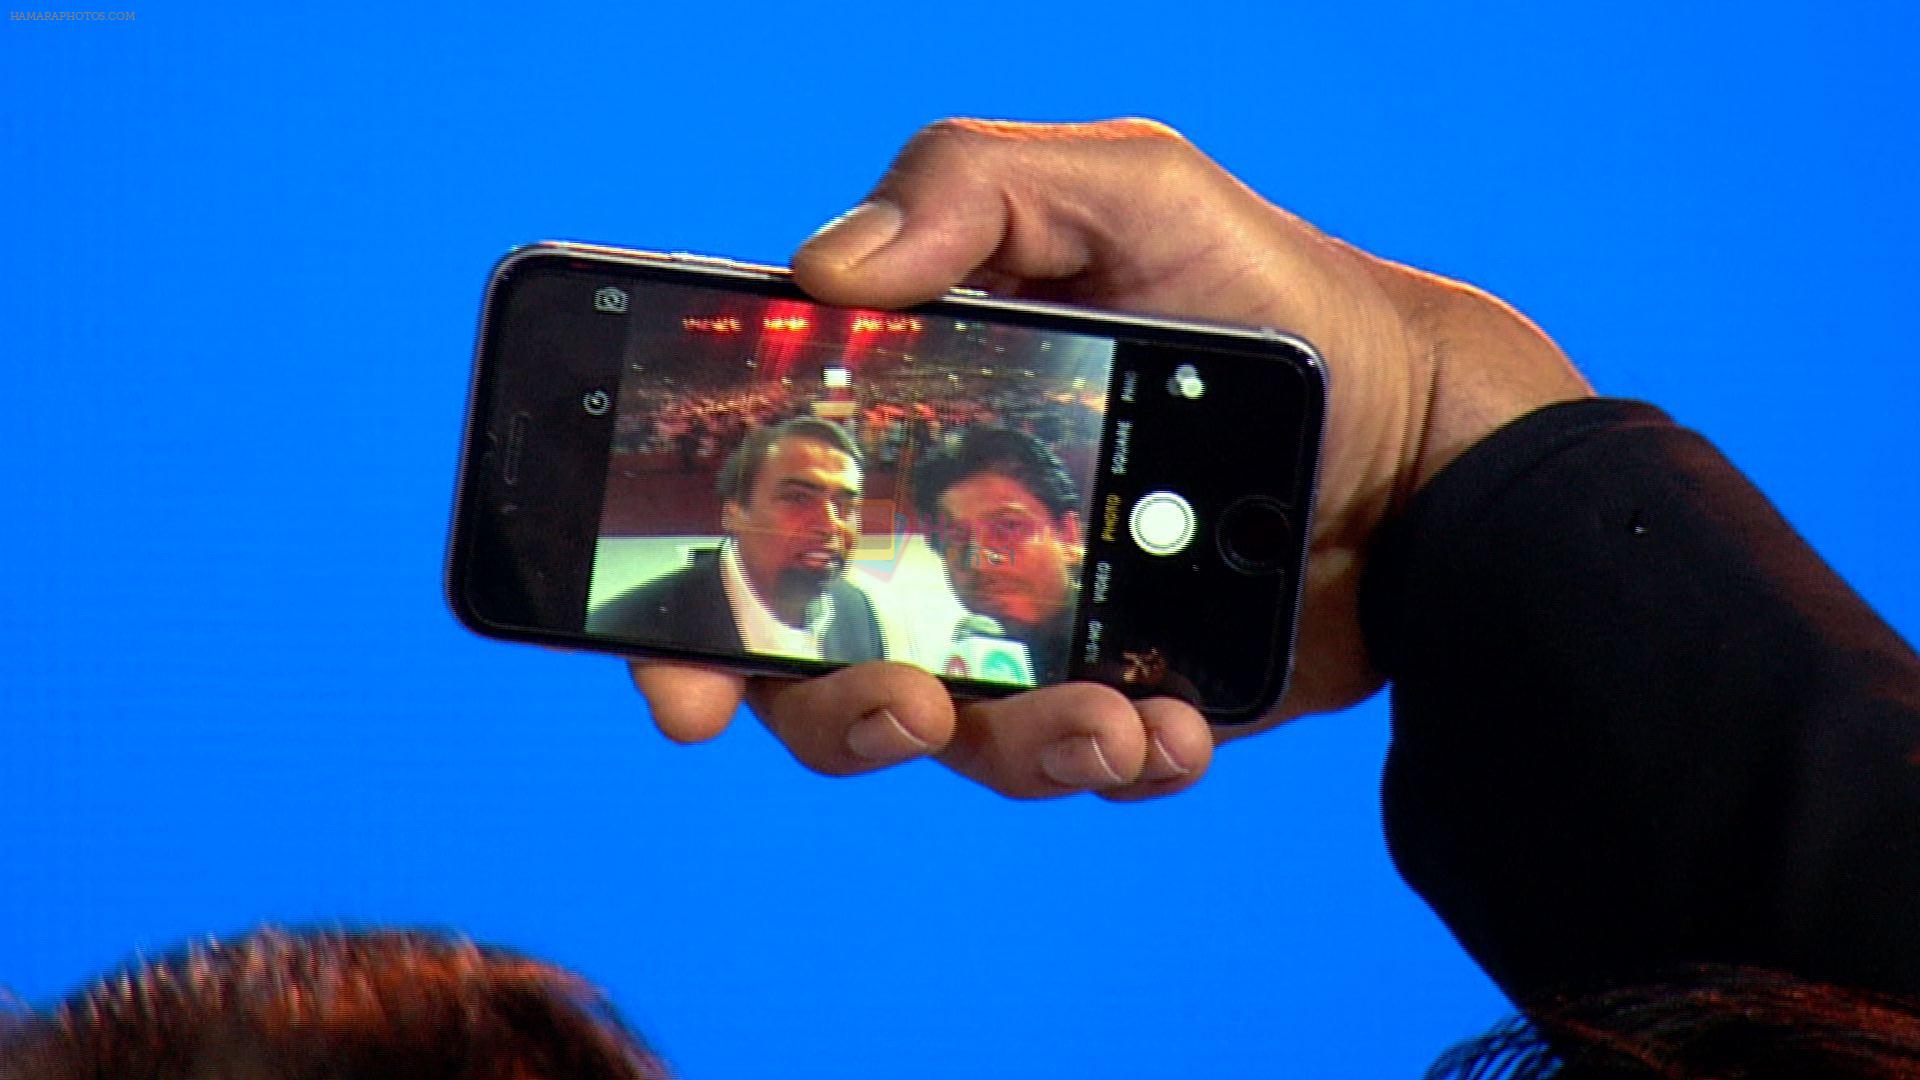 srk takes selfie with mukesh ambani at jio launch